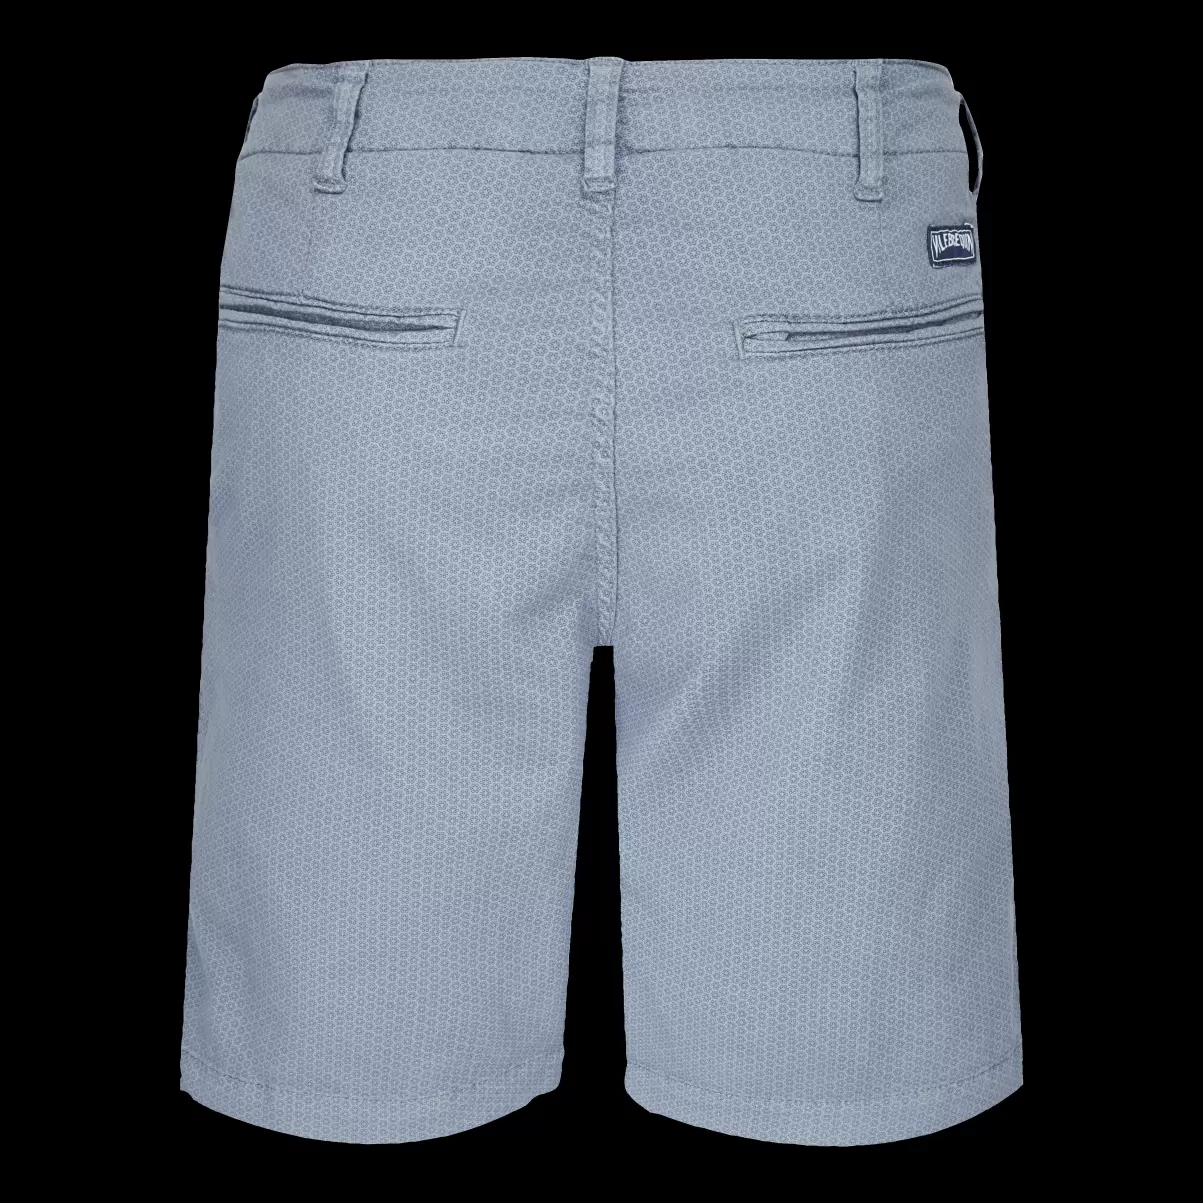 Hombre Vilebrequin Gris Metalico / Gris Shorts Autorización Bermudas Tipo Pantalones Chinos Para Hombre Con El Estampado Micro Flowers - 4